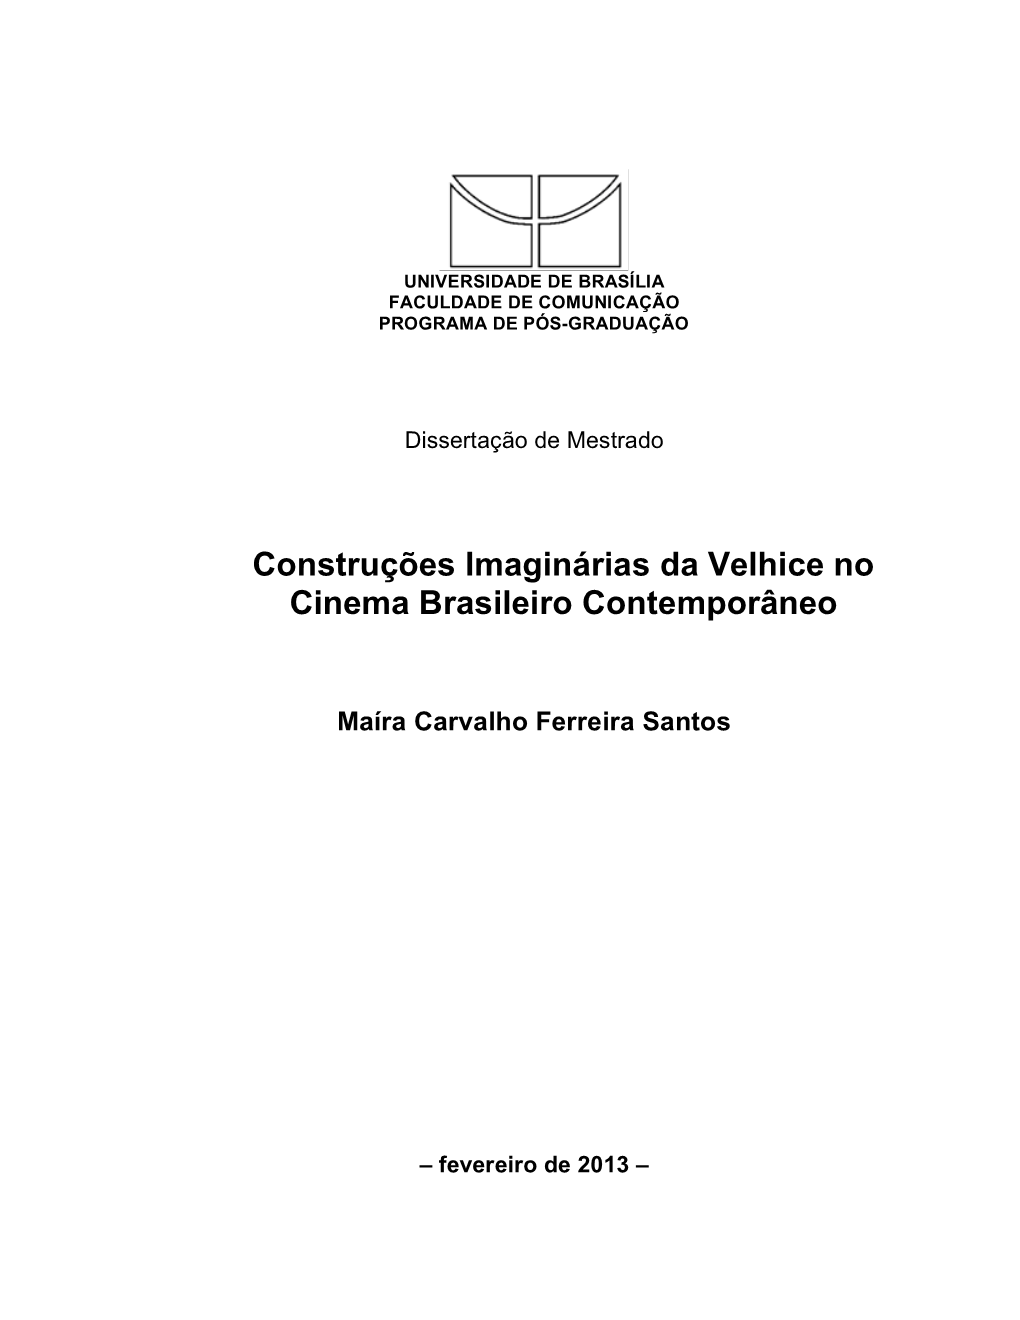 Dissertação Maira Carvalho Ferreira Santos